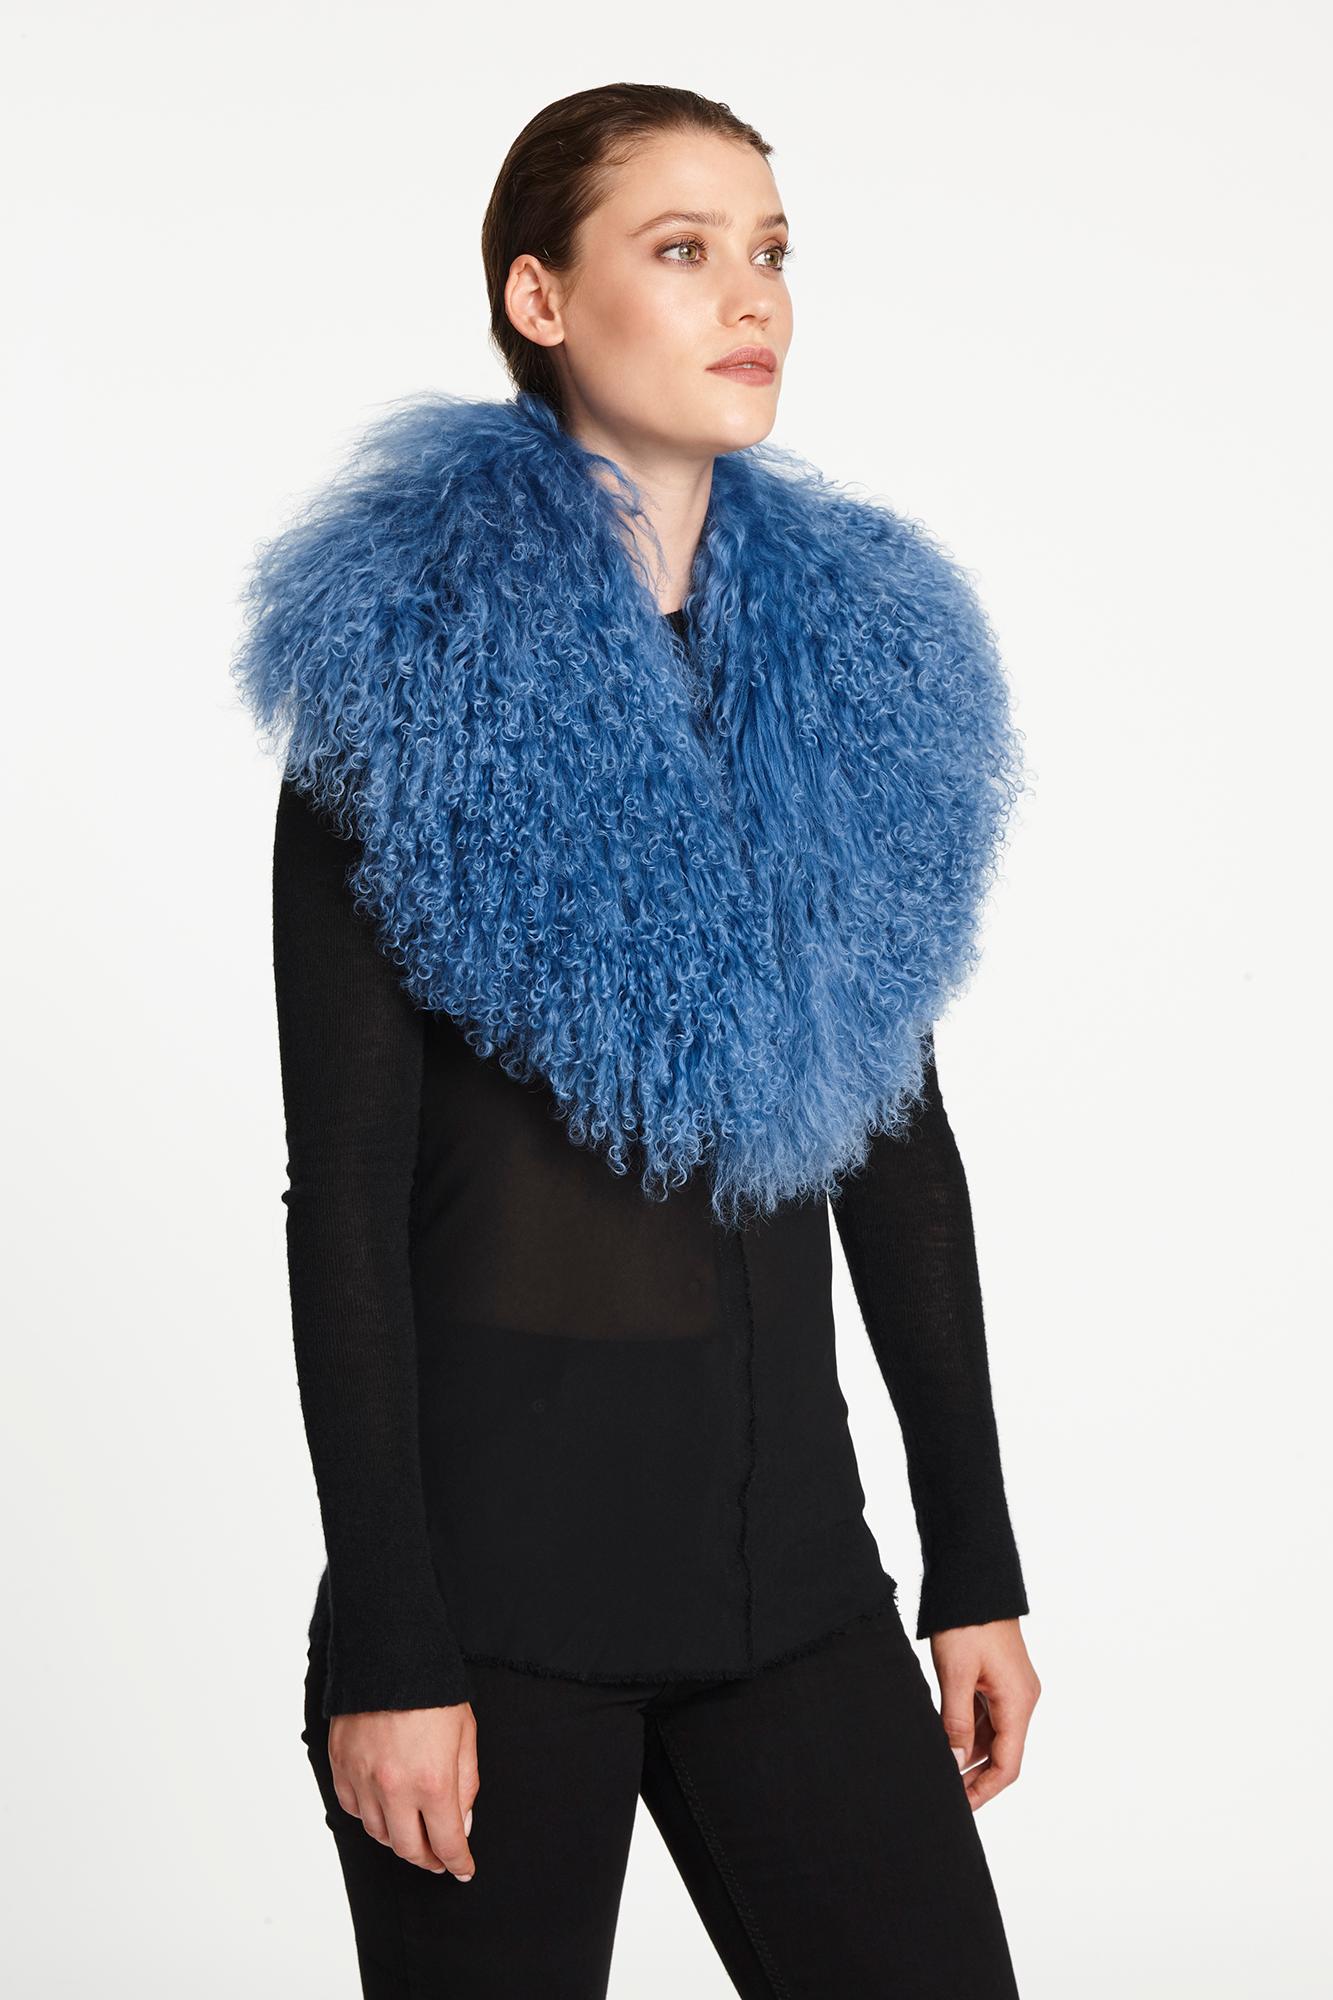 Verheyen London Shawl Collar in Blue Topaz Mongolian Lamb Fur lined in silk new 2